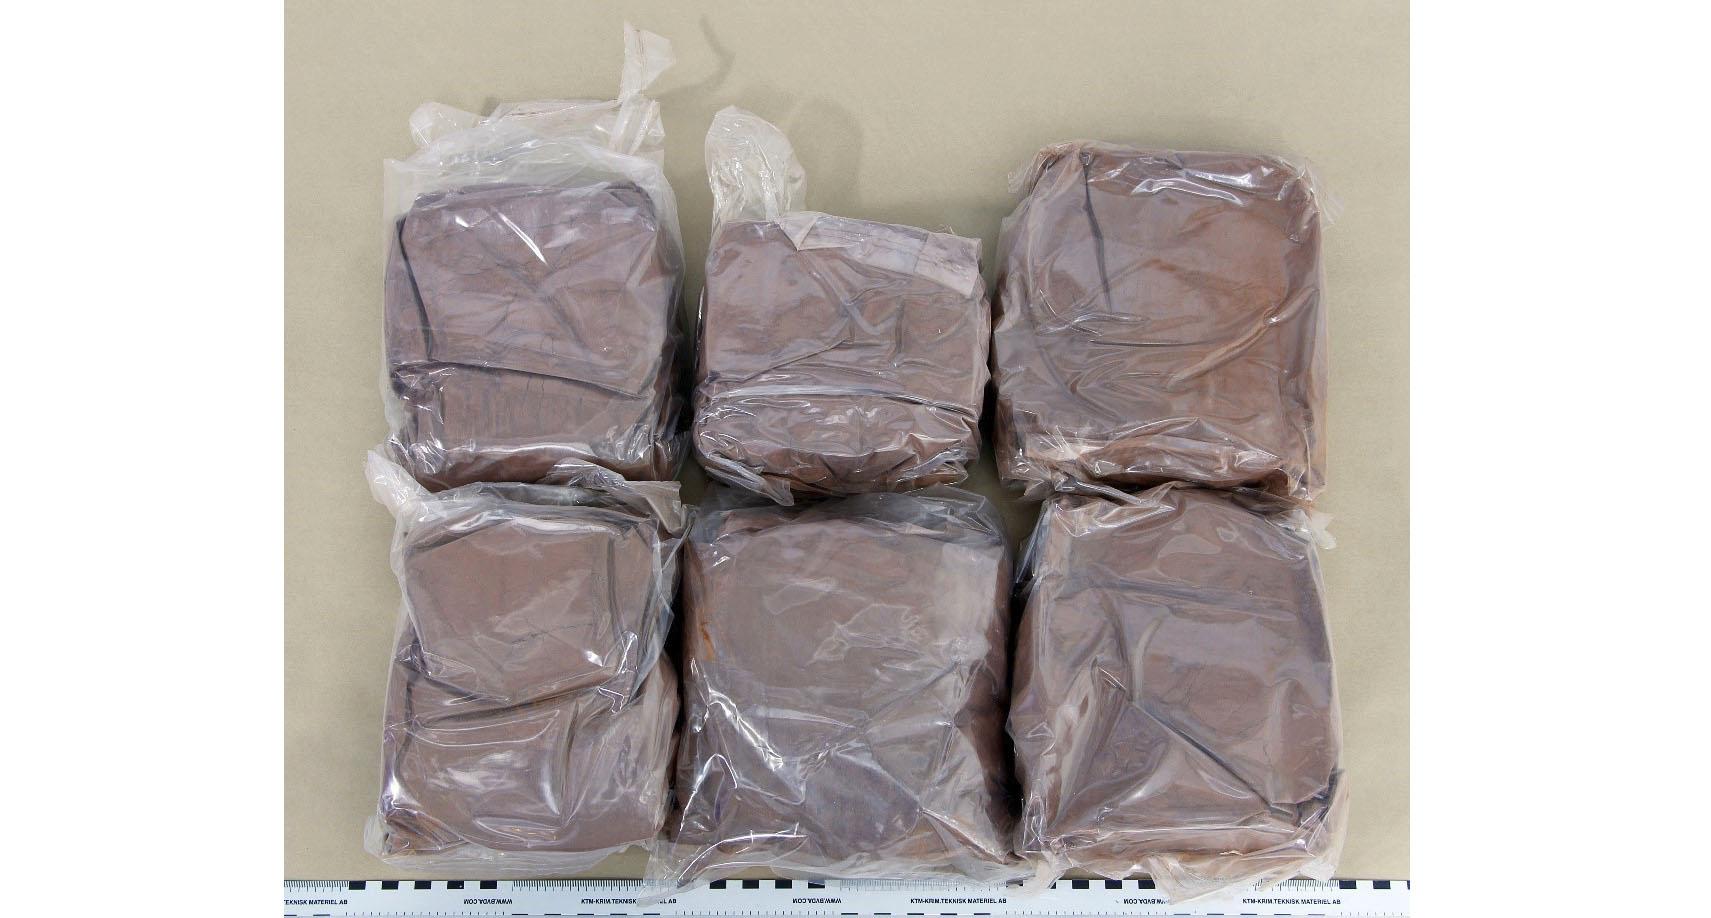 Totalt beslagtogs 150 sådana här påsar med rödfärgat kokain. Arkivbild.